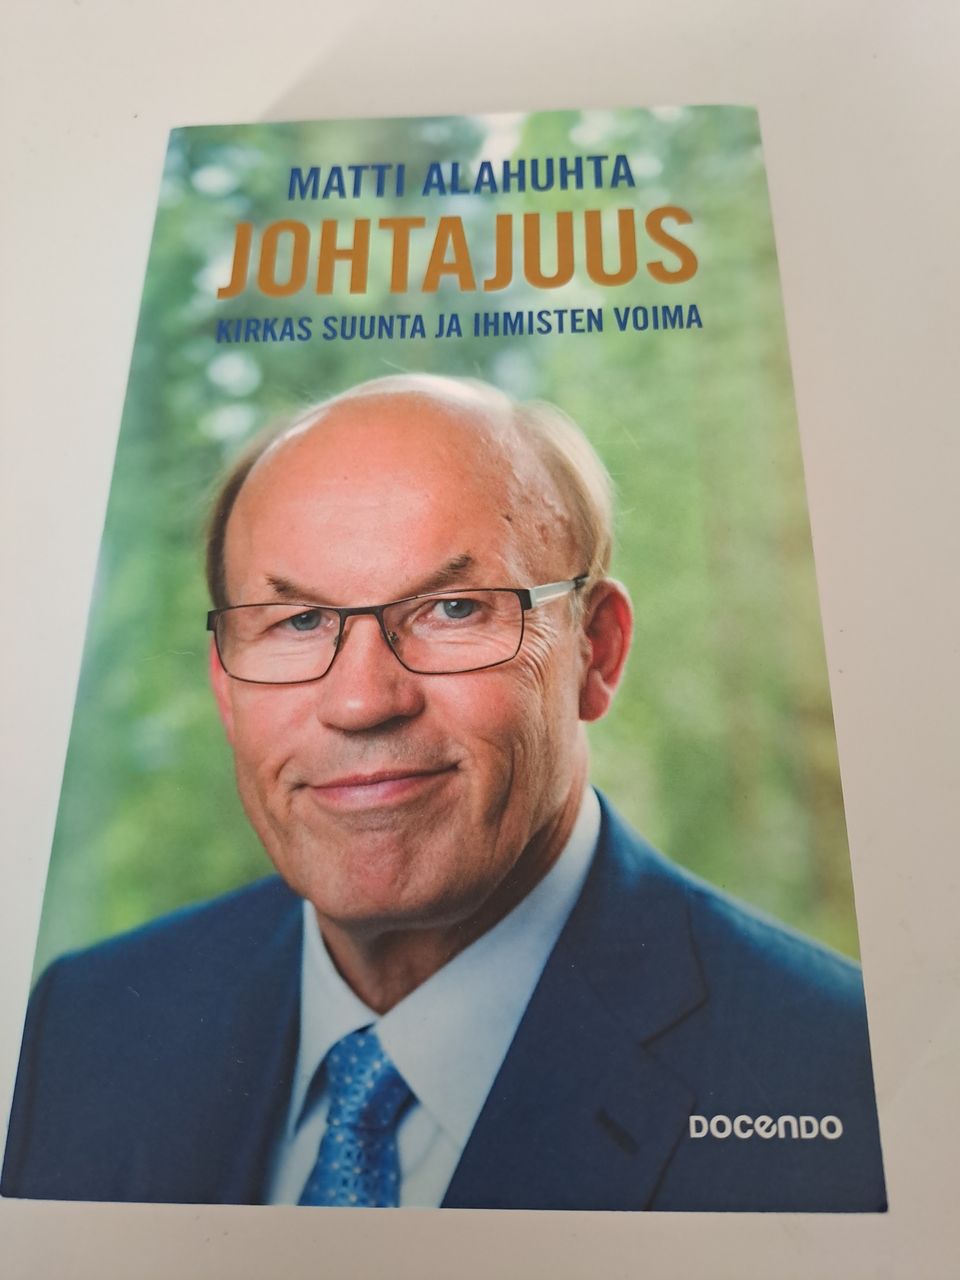 Matti Alahuhta, johtajuus, docendo 2017